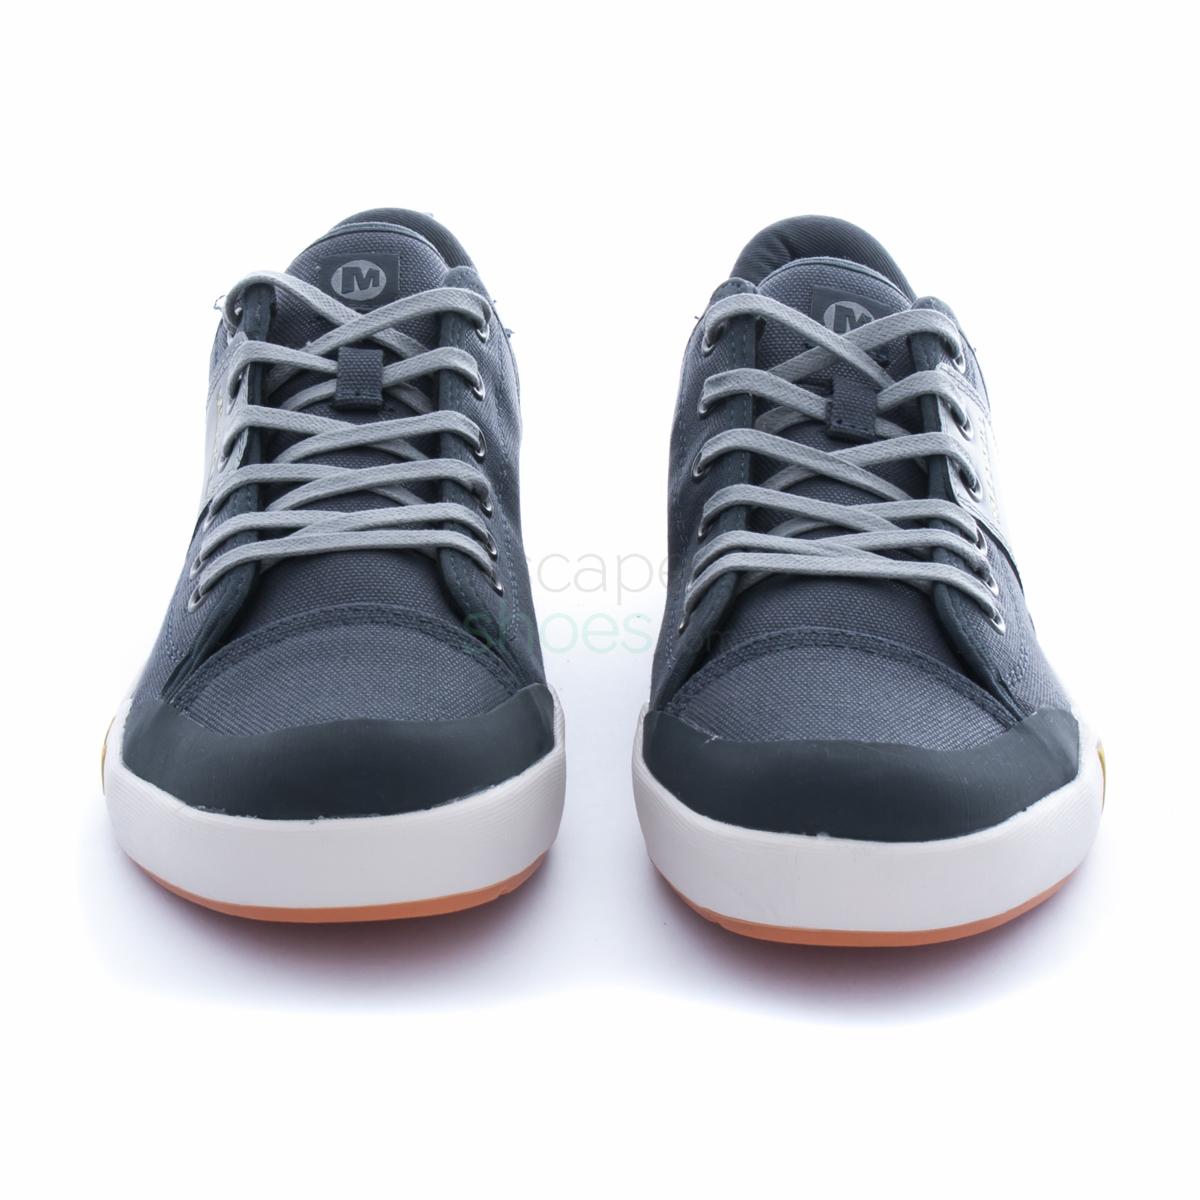 Sneakers MERRELL J49681 Rant Dark Slate